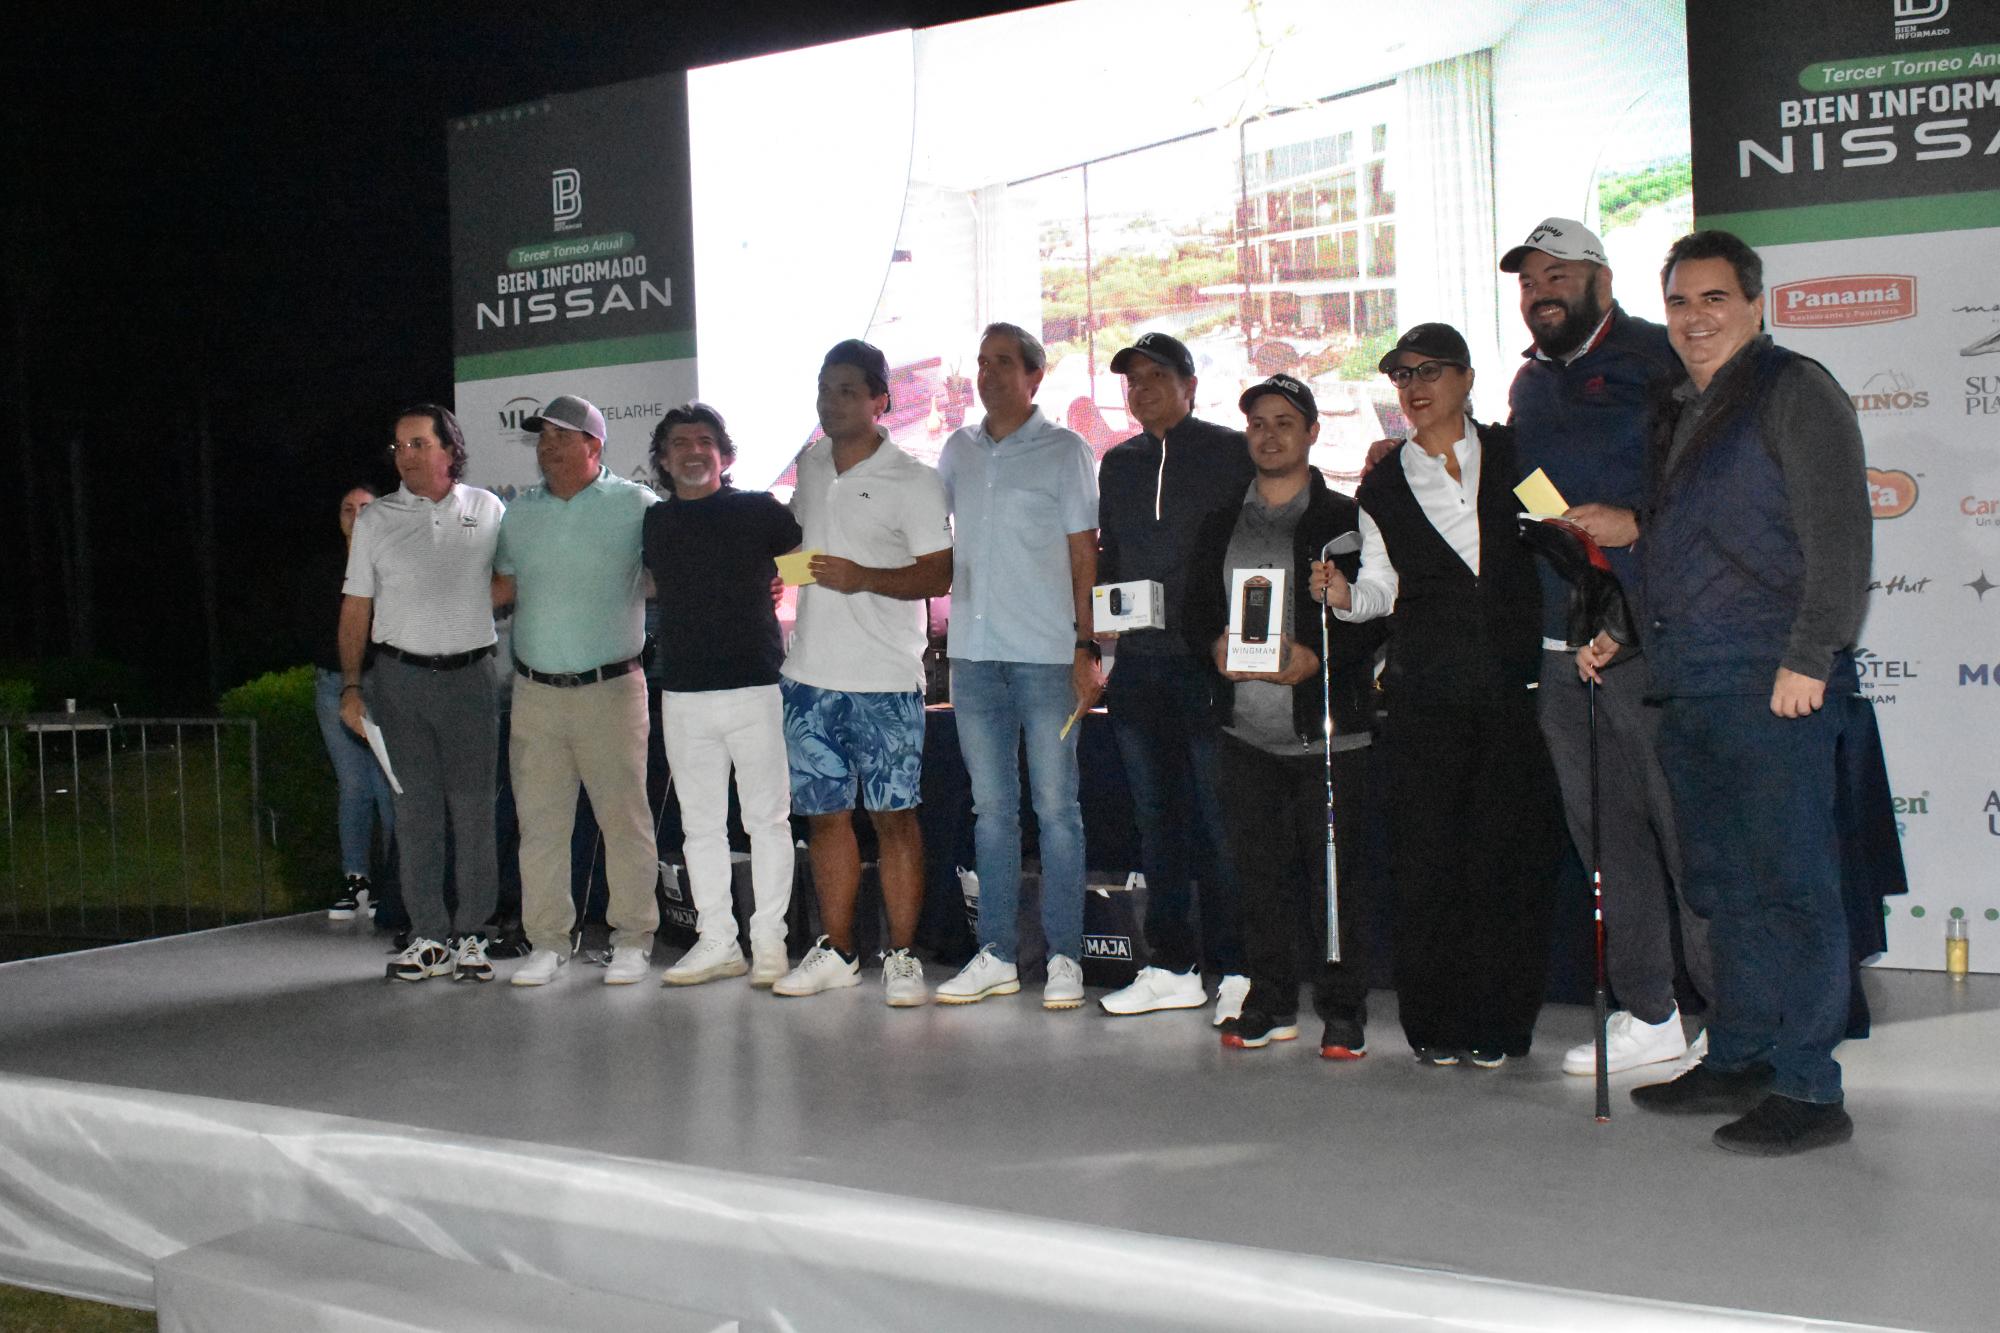 $!El torneo contó con una bolsa de 3 millones de pesos, entre automóviles Nissan, premios en efectivo y relojes de lujo.